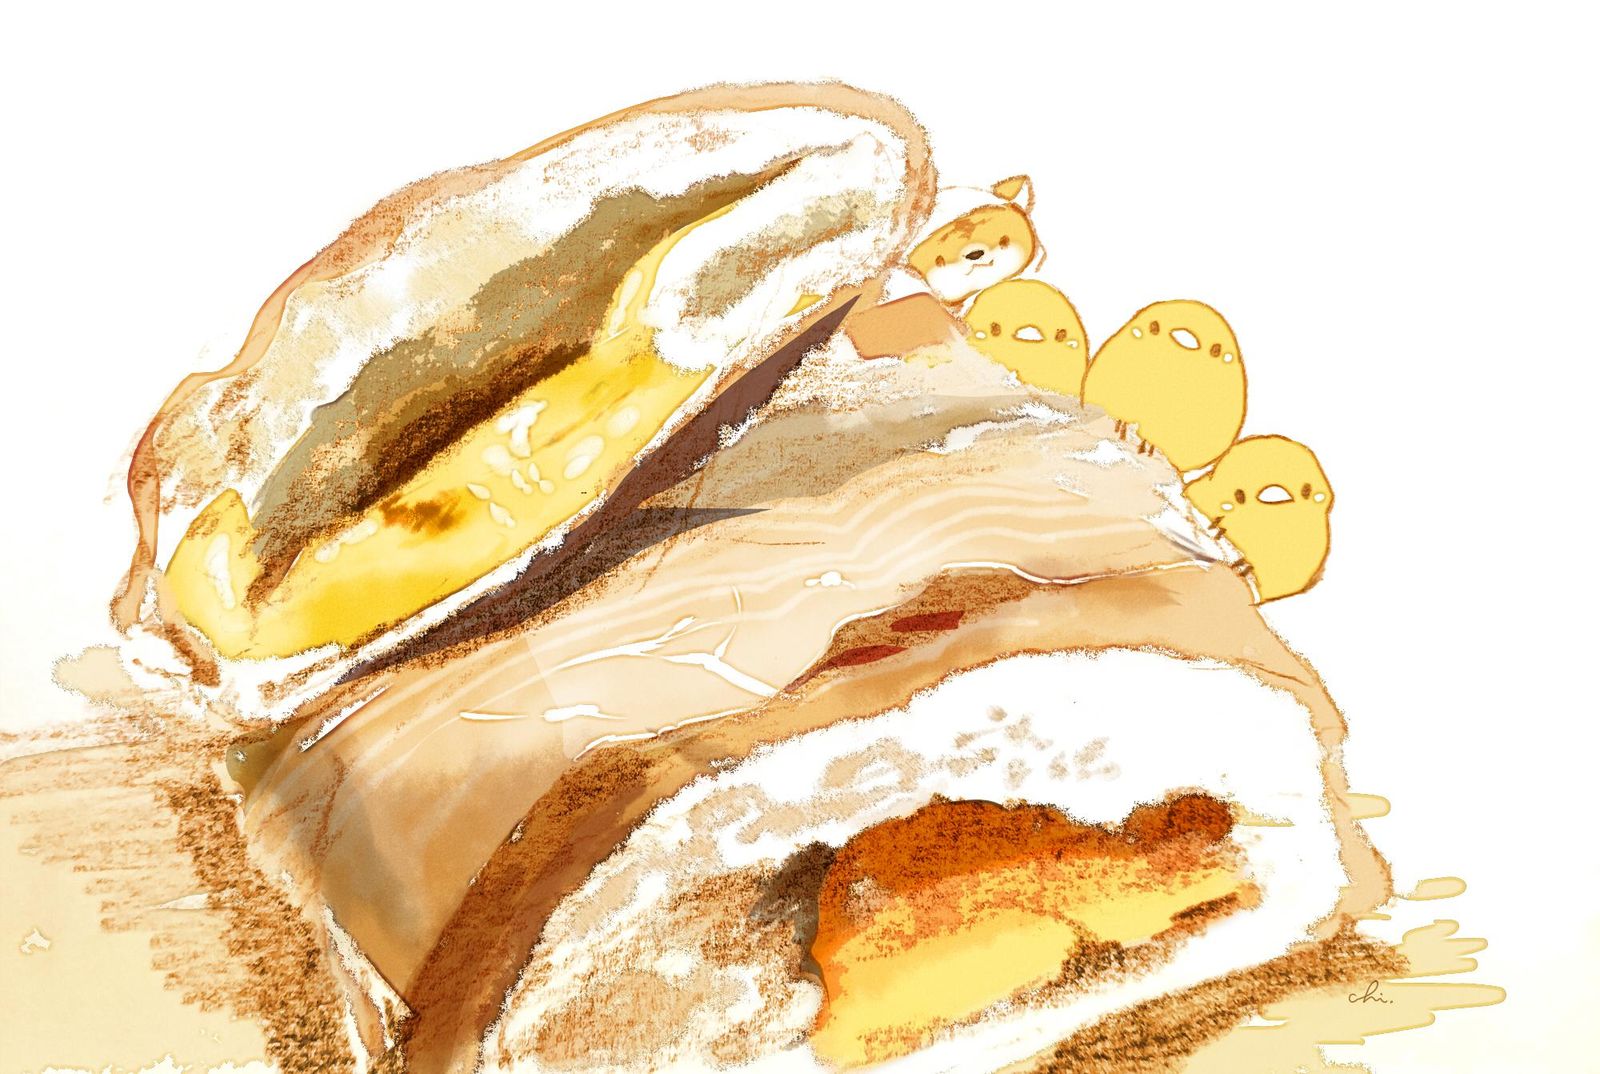 奶油面包-原创すいーとり